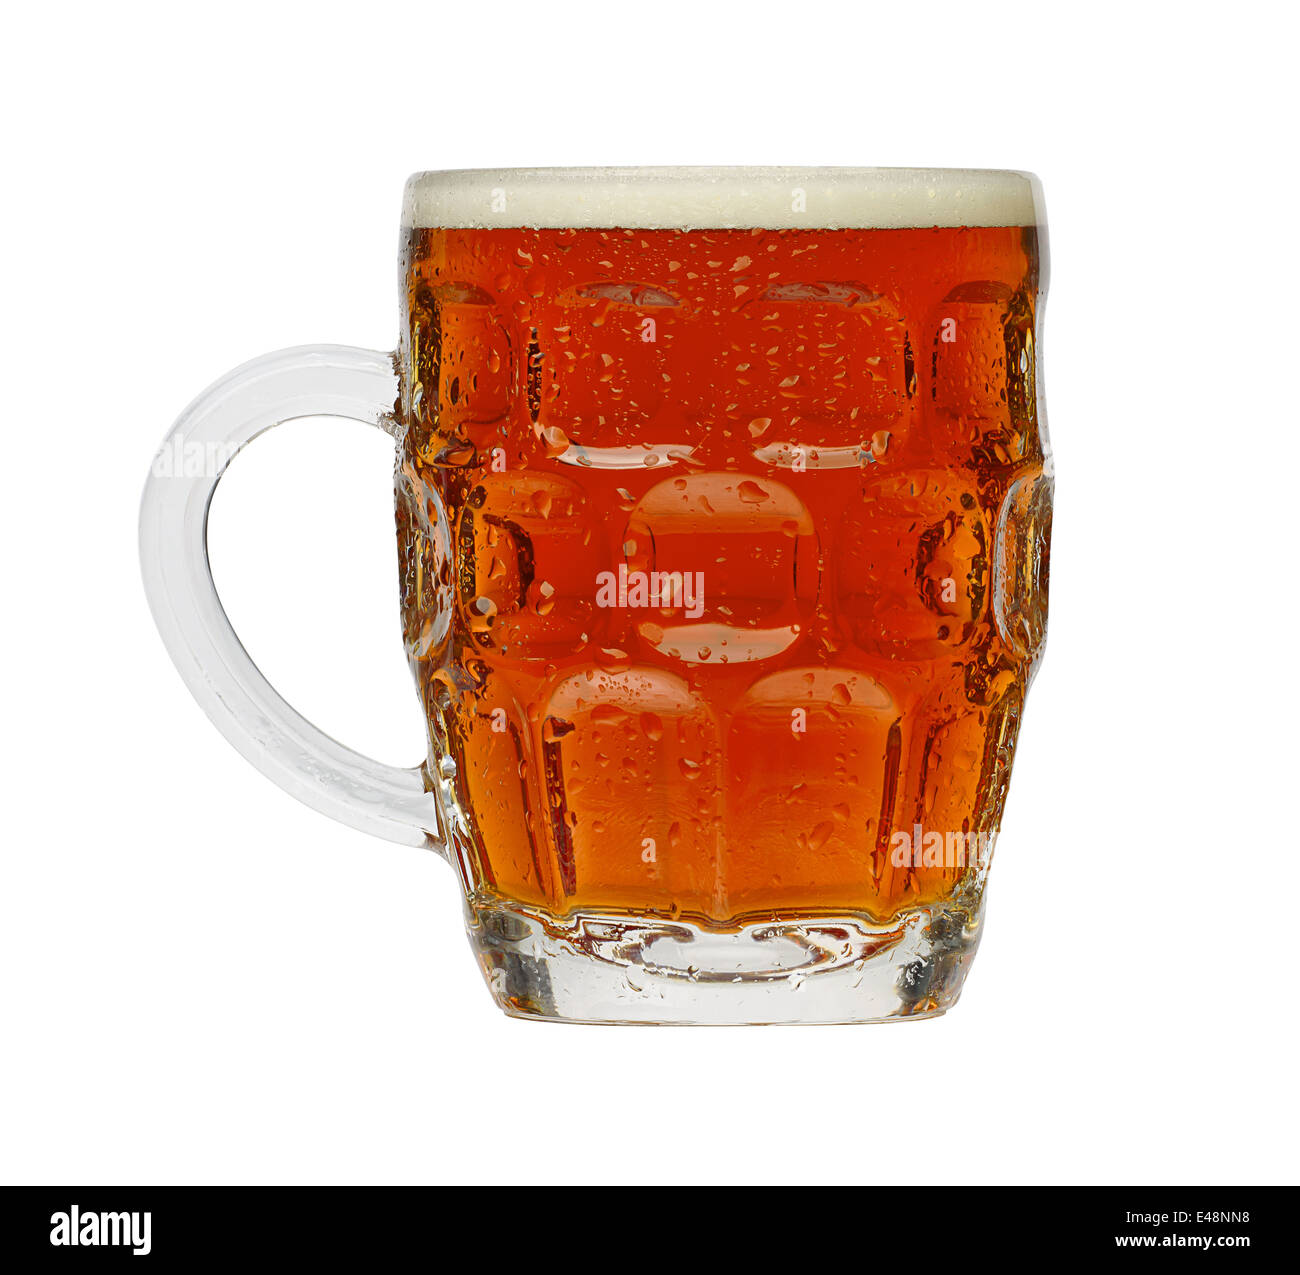 Traditionellen Pint Bier in einem typisch britischen Grübchen-Glas Stockfoto